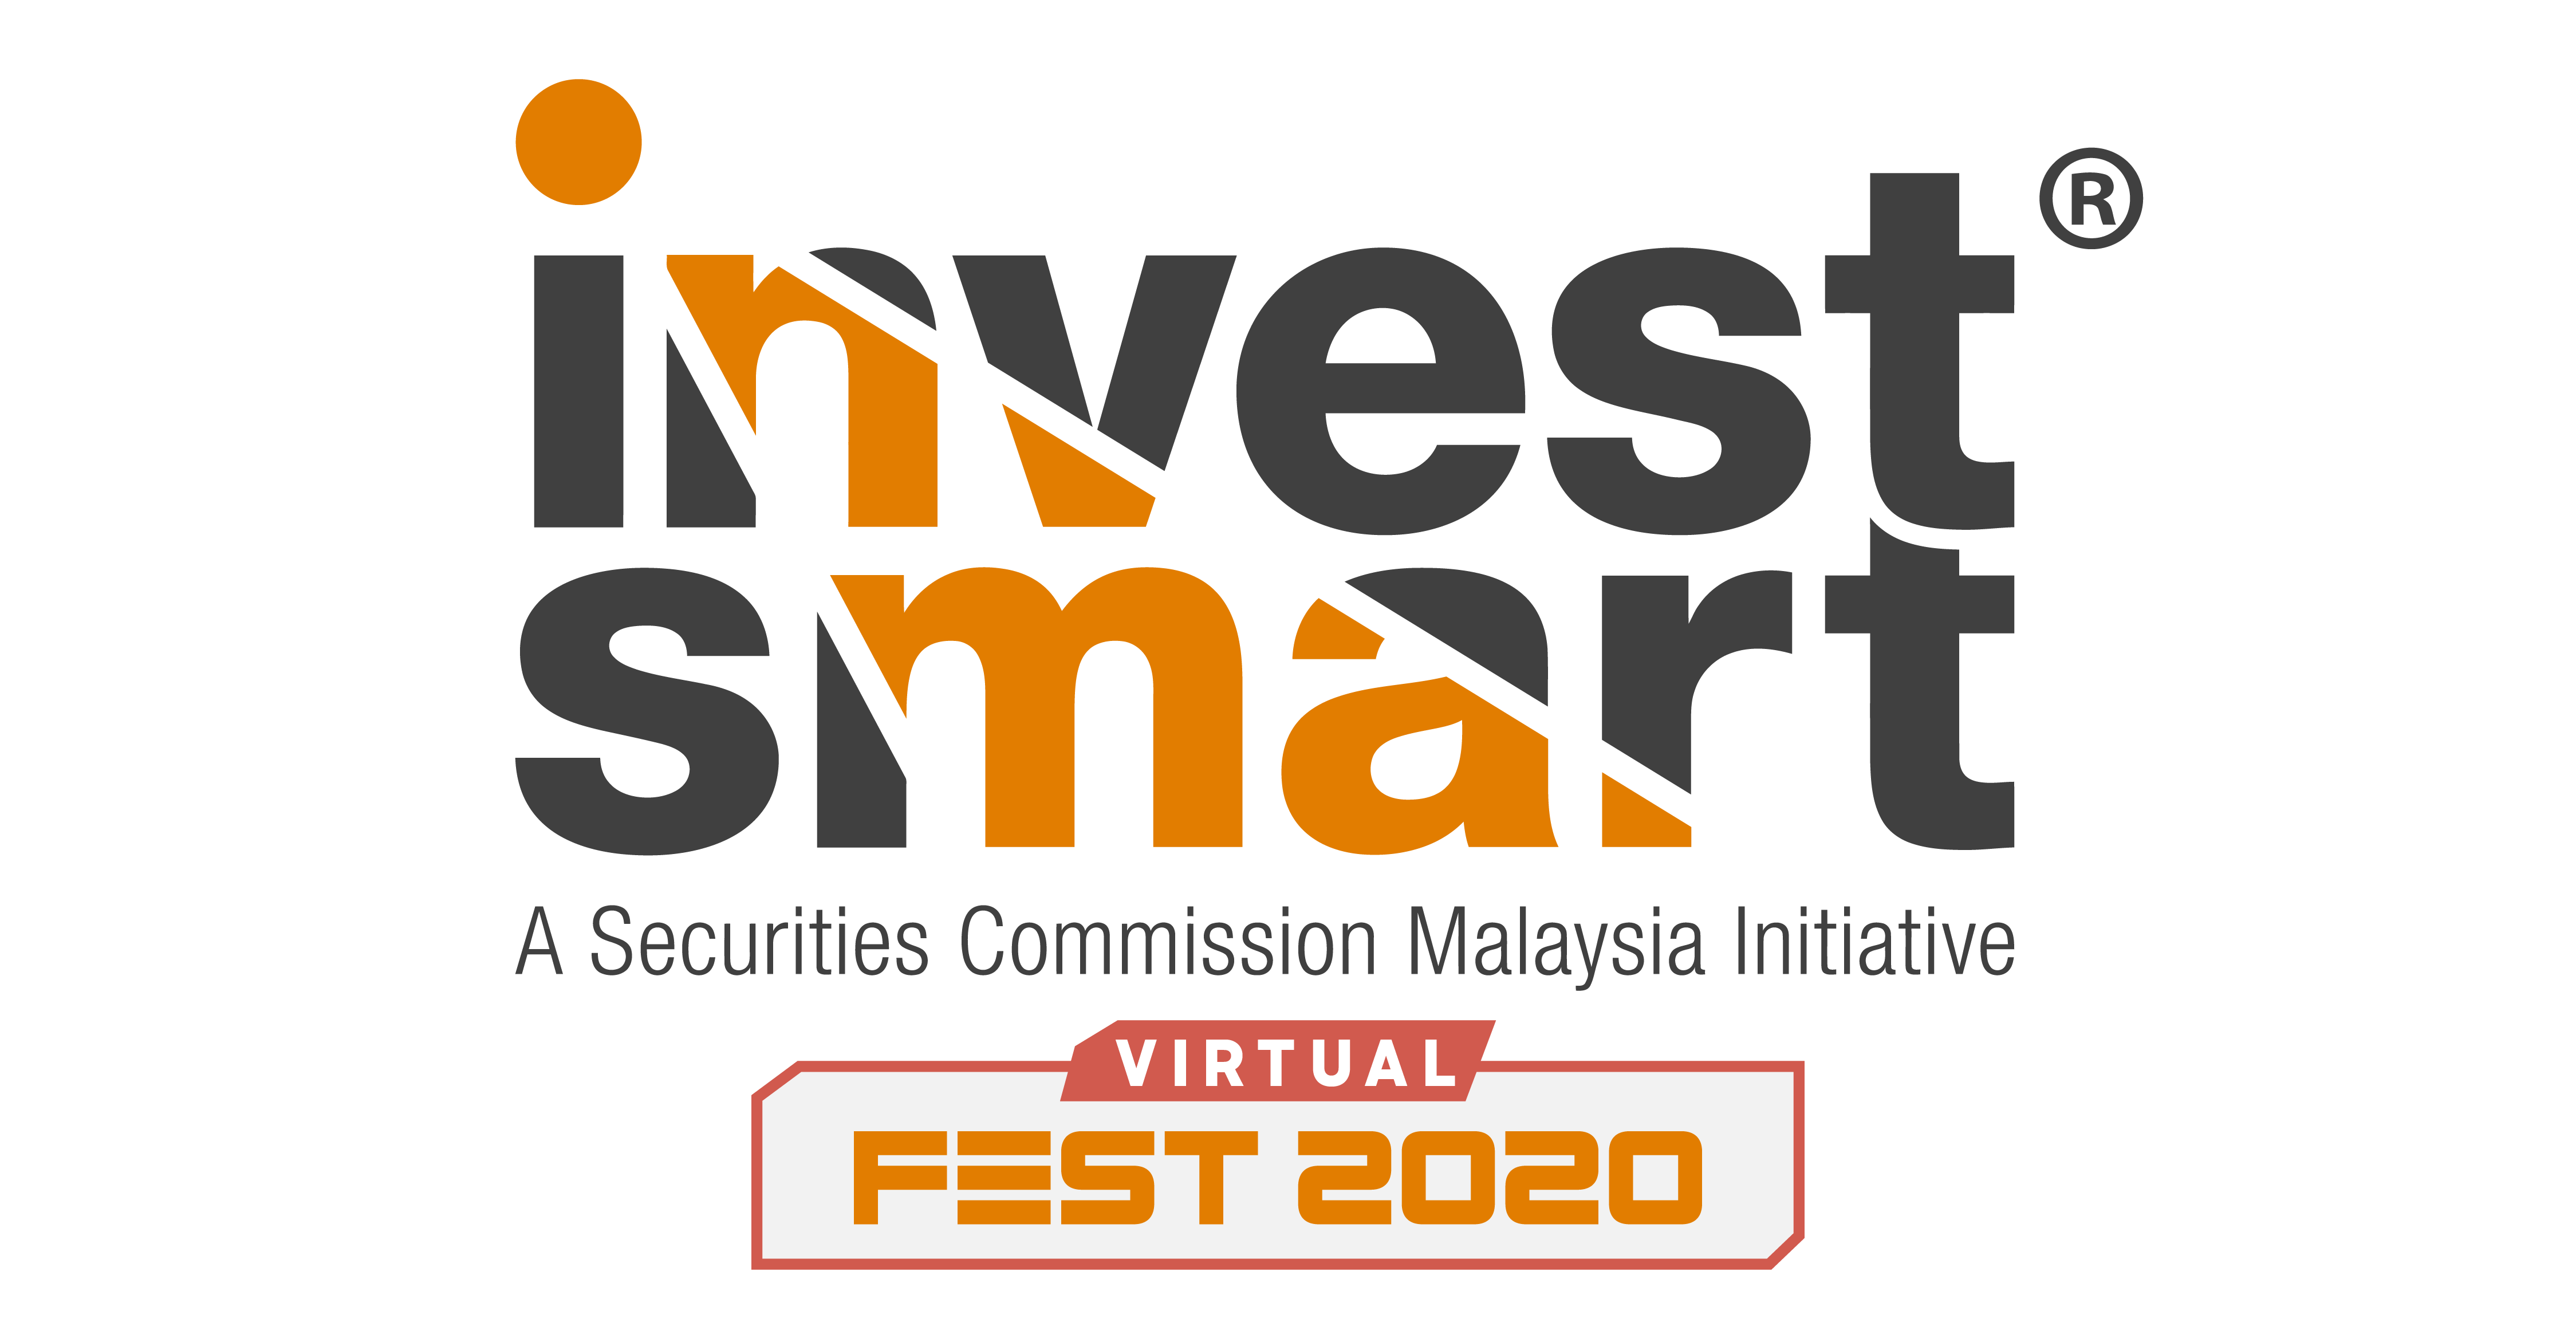 InvestSmart Fest 2020